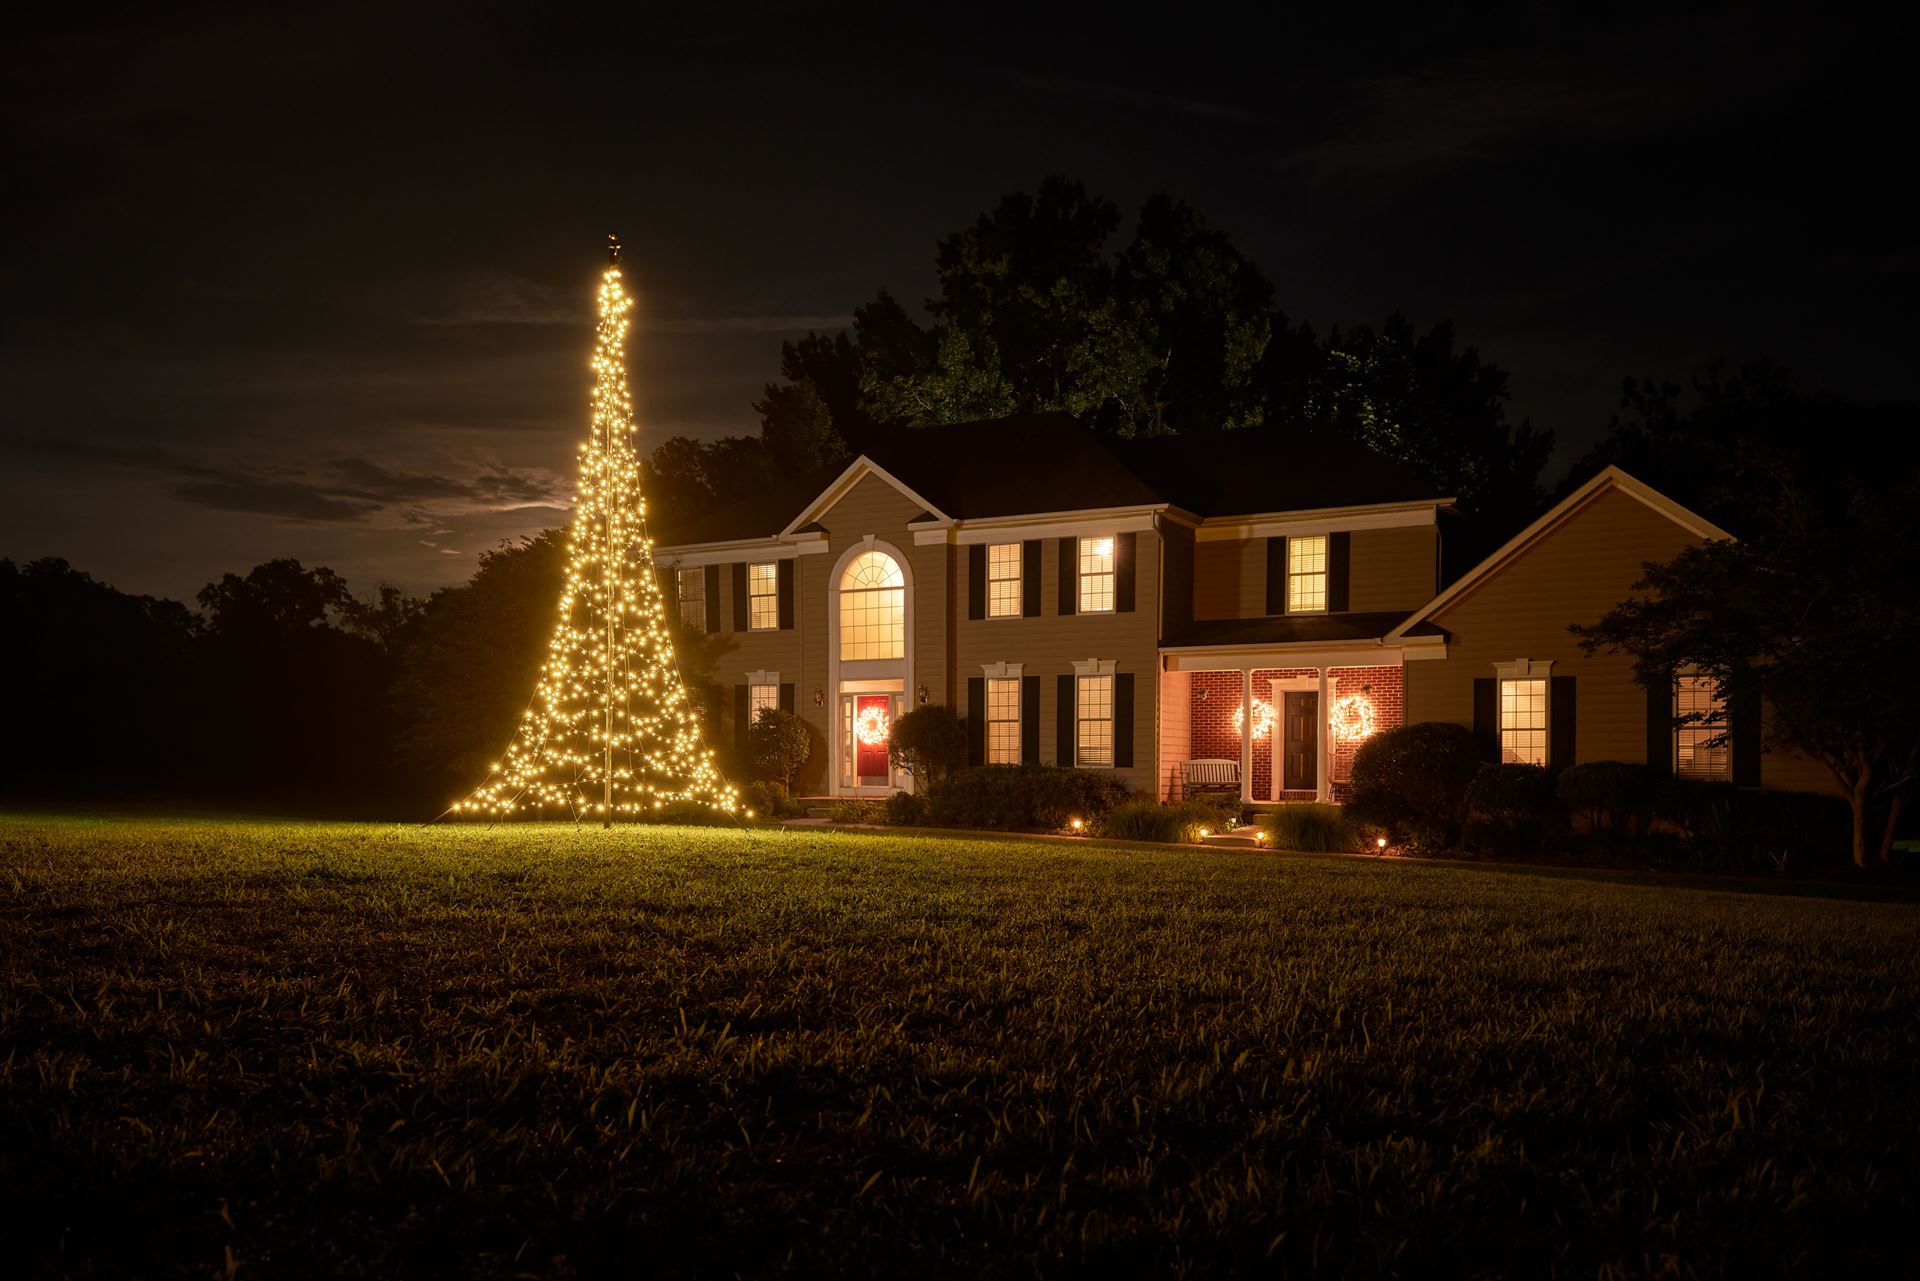 Fairybell-kerstverlichting-kerstboom-6m-hoog-900-LED-lampjes-in-warmwitte-kleur-voor-buiten